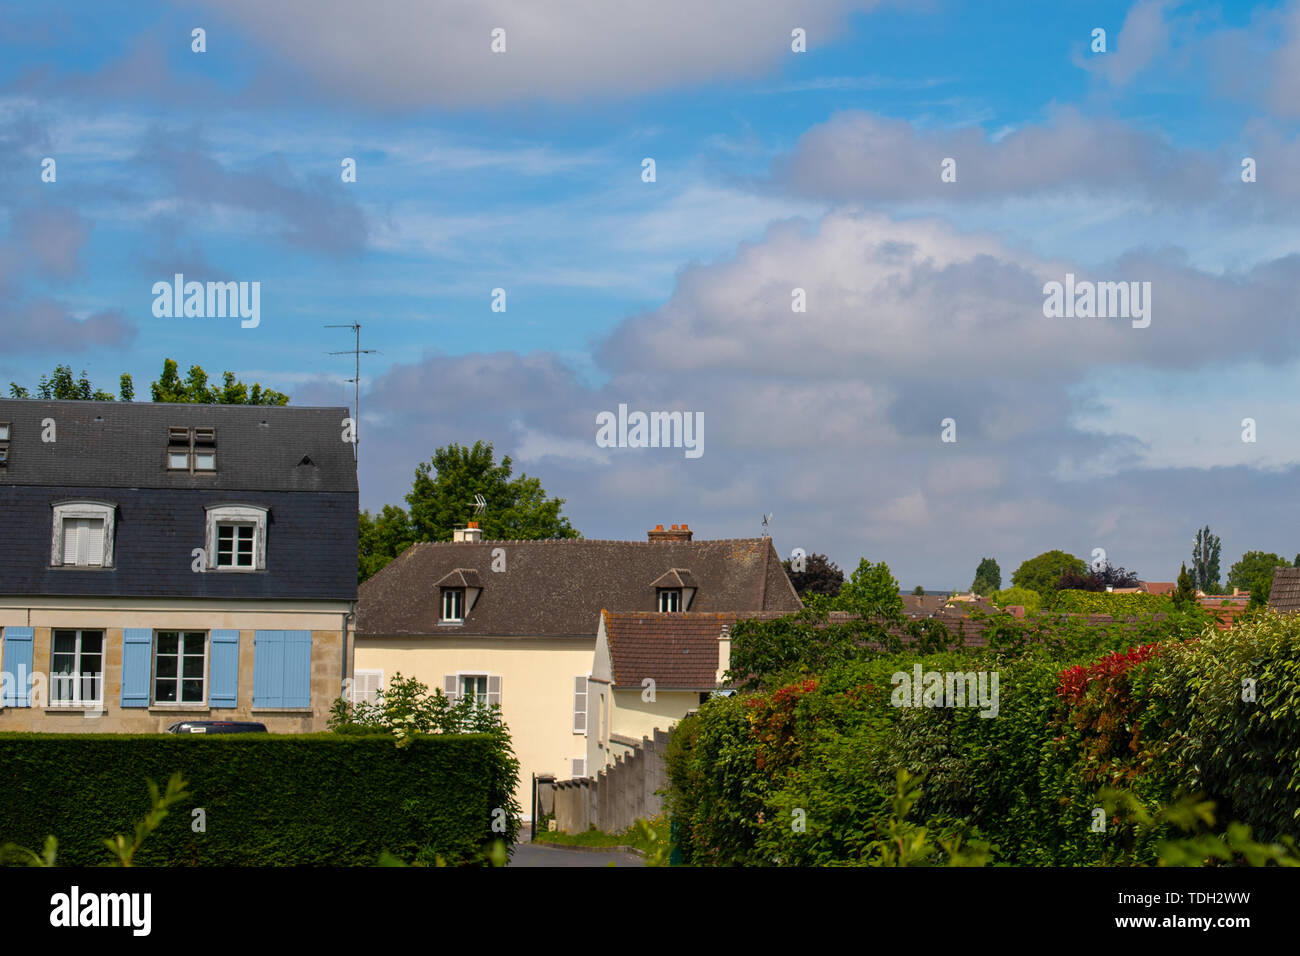 Azul cielo nublado y contrastantes en un pueblo europeo. Casas francesas. Hedge y mucha vegetación en el callejón. Foto de stock